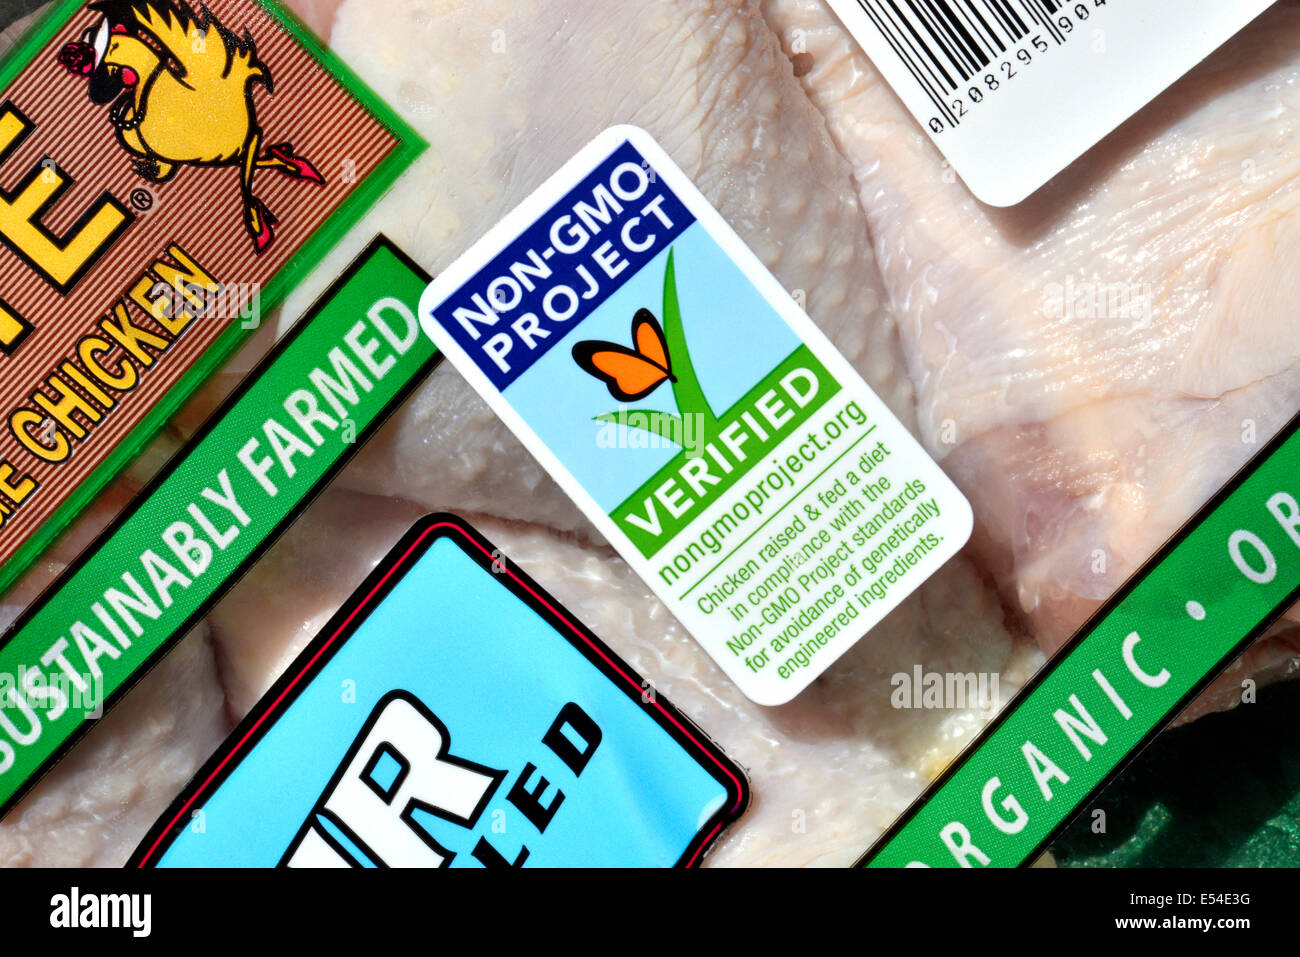 Rosie Free Range Chicken USDA Organic bacchette sono confezionate con un non OGM etichetta che indica non OGM verifica. Foto Stock